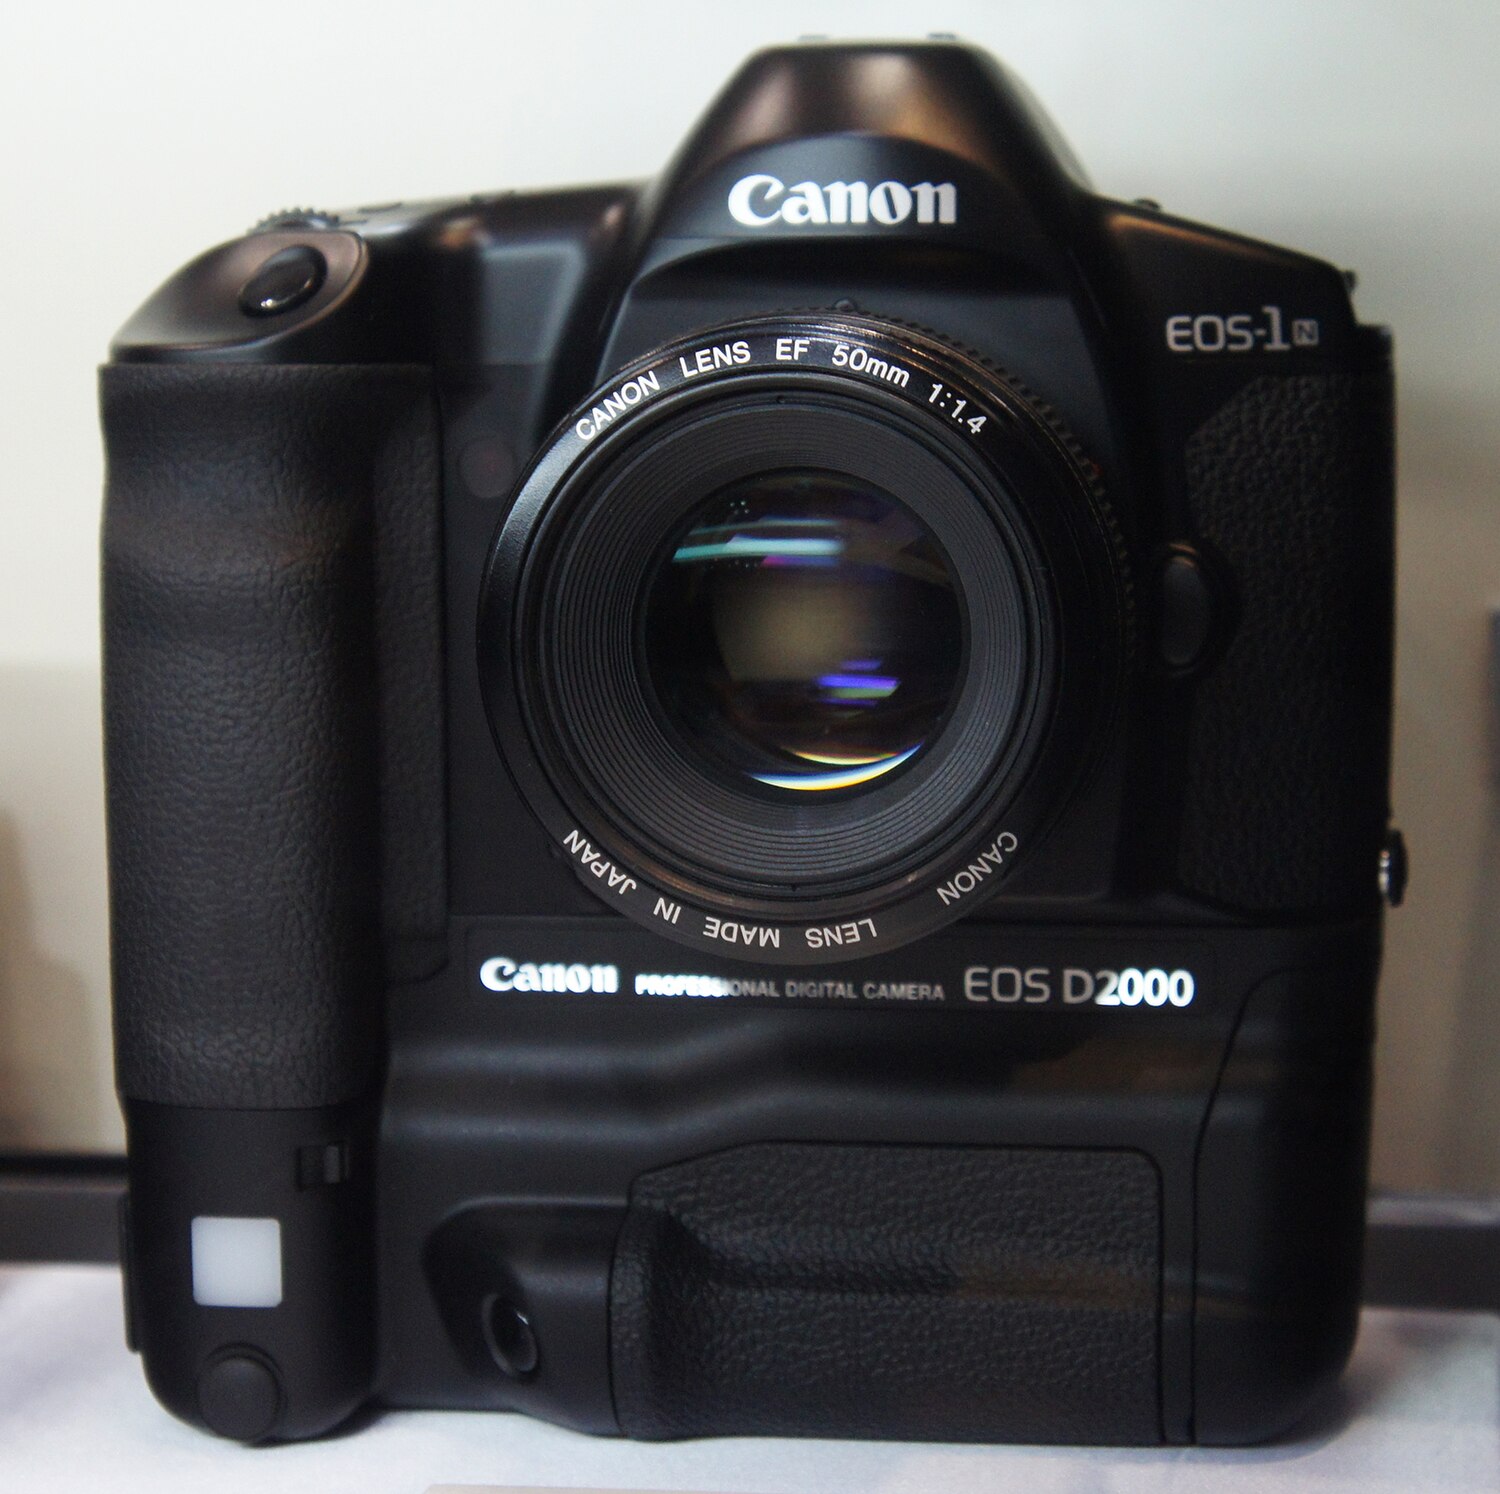 Canon EOS D6000 - Wikipedia